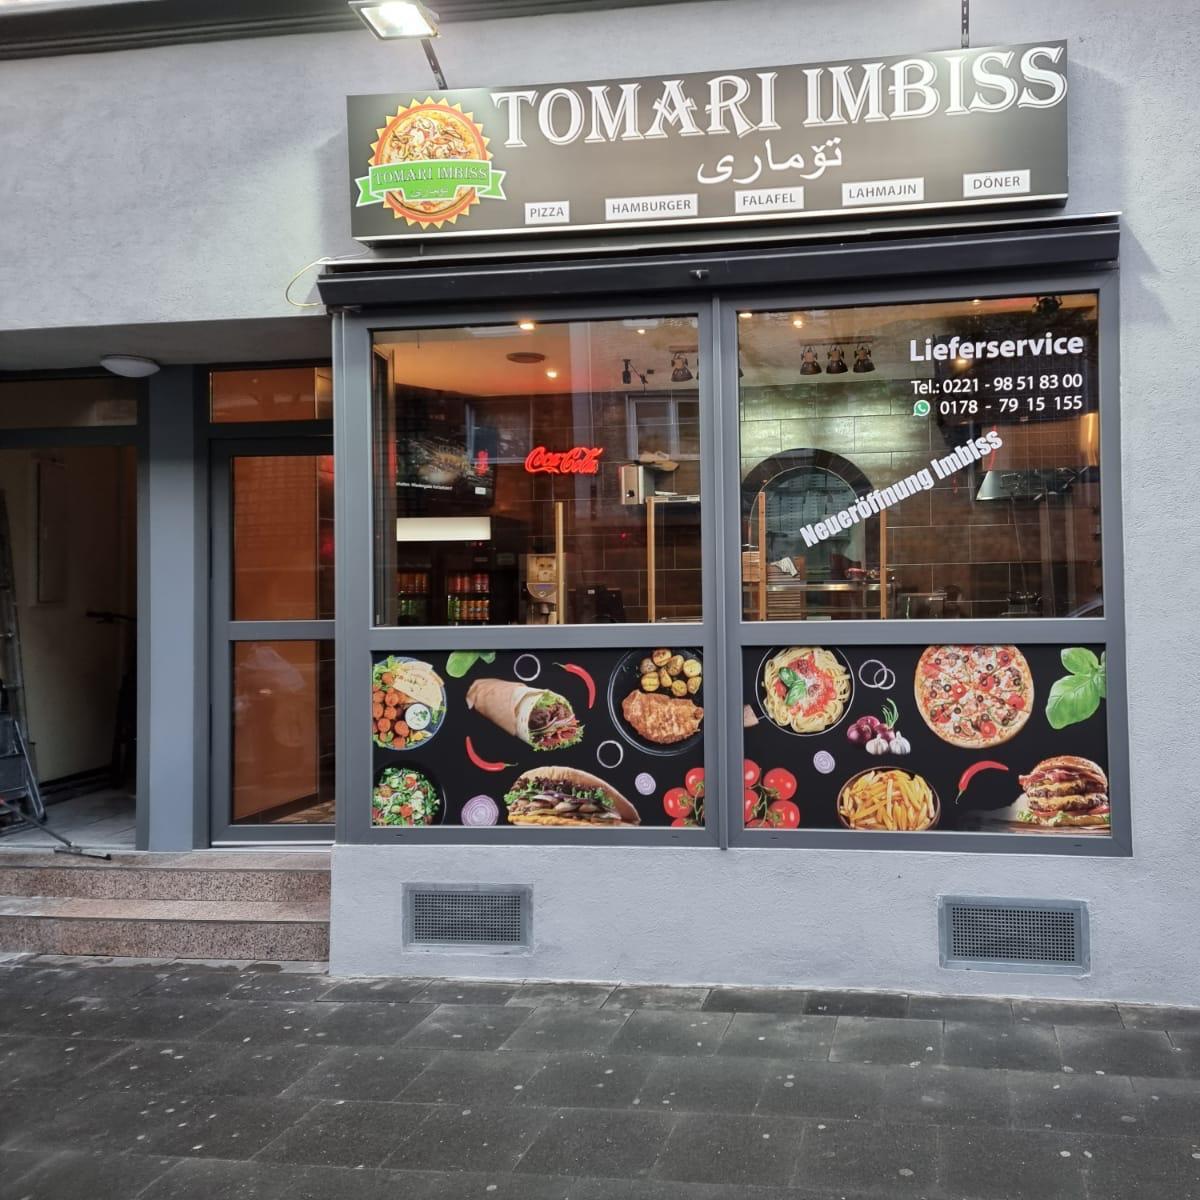 Restaurant "Tomari Imbiss" in Köln